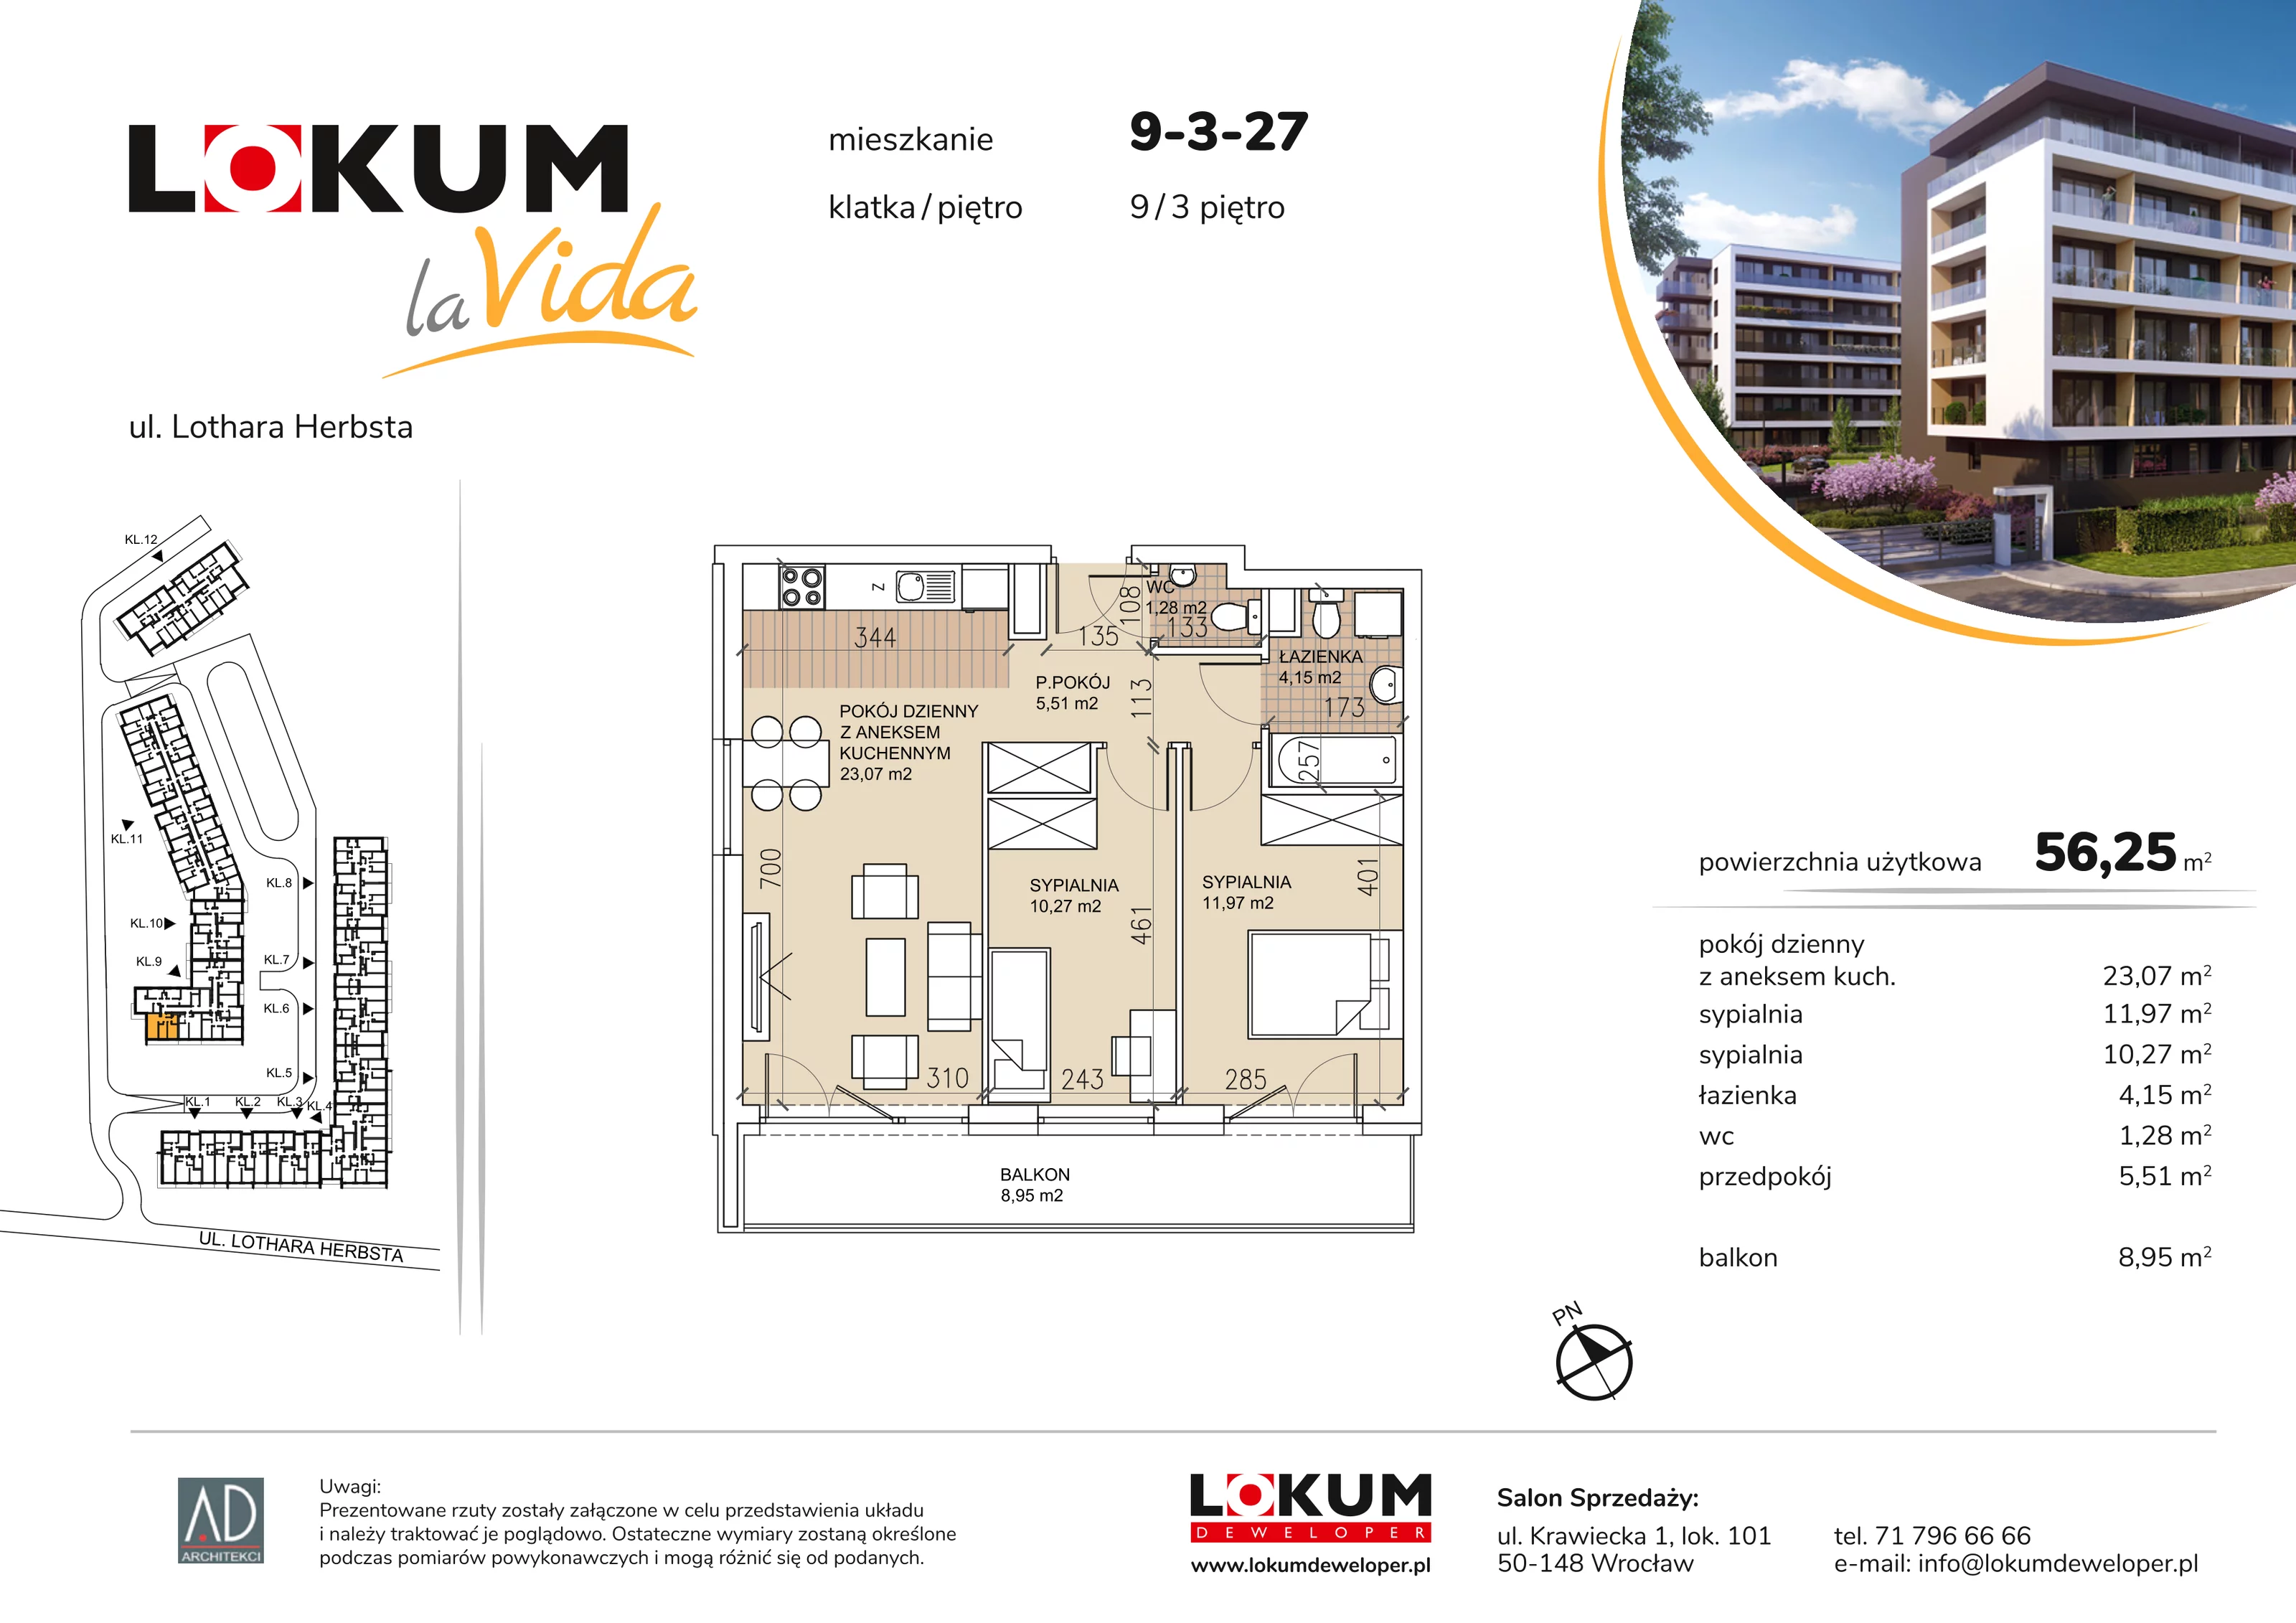 Mieszkanie 56,25 m², piętro 3, oferta nr 9-3-27, Lokum la Vida, Wrocław, Sołtysowice, ul. Lothara Herbsta